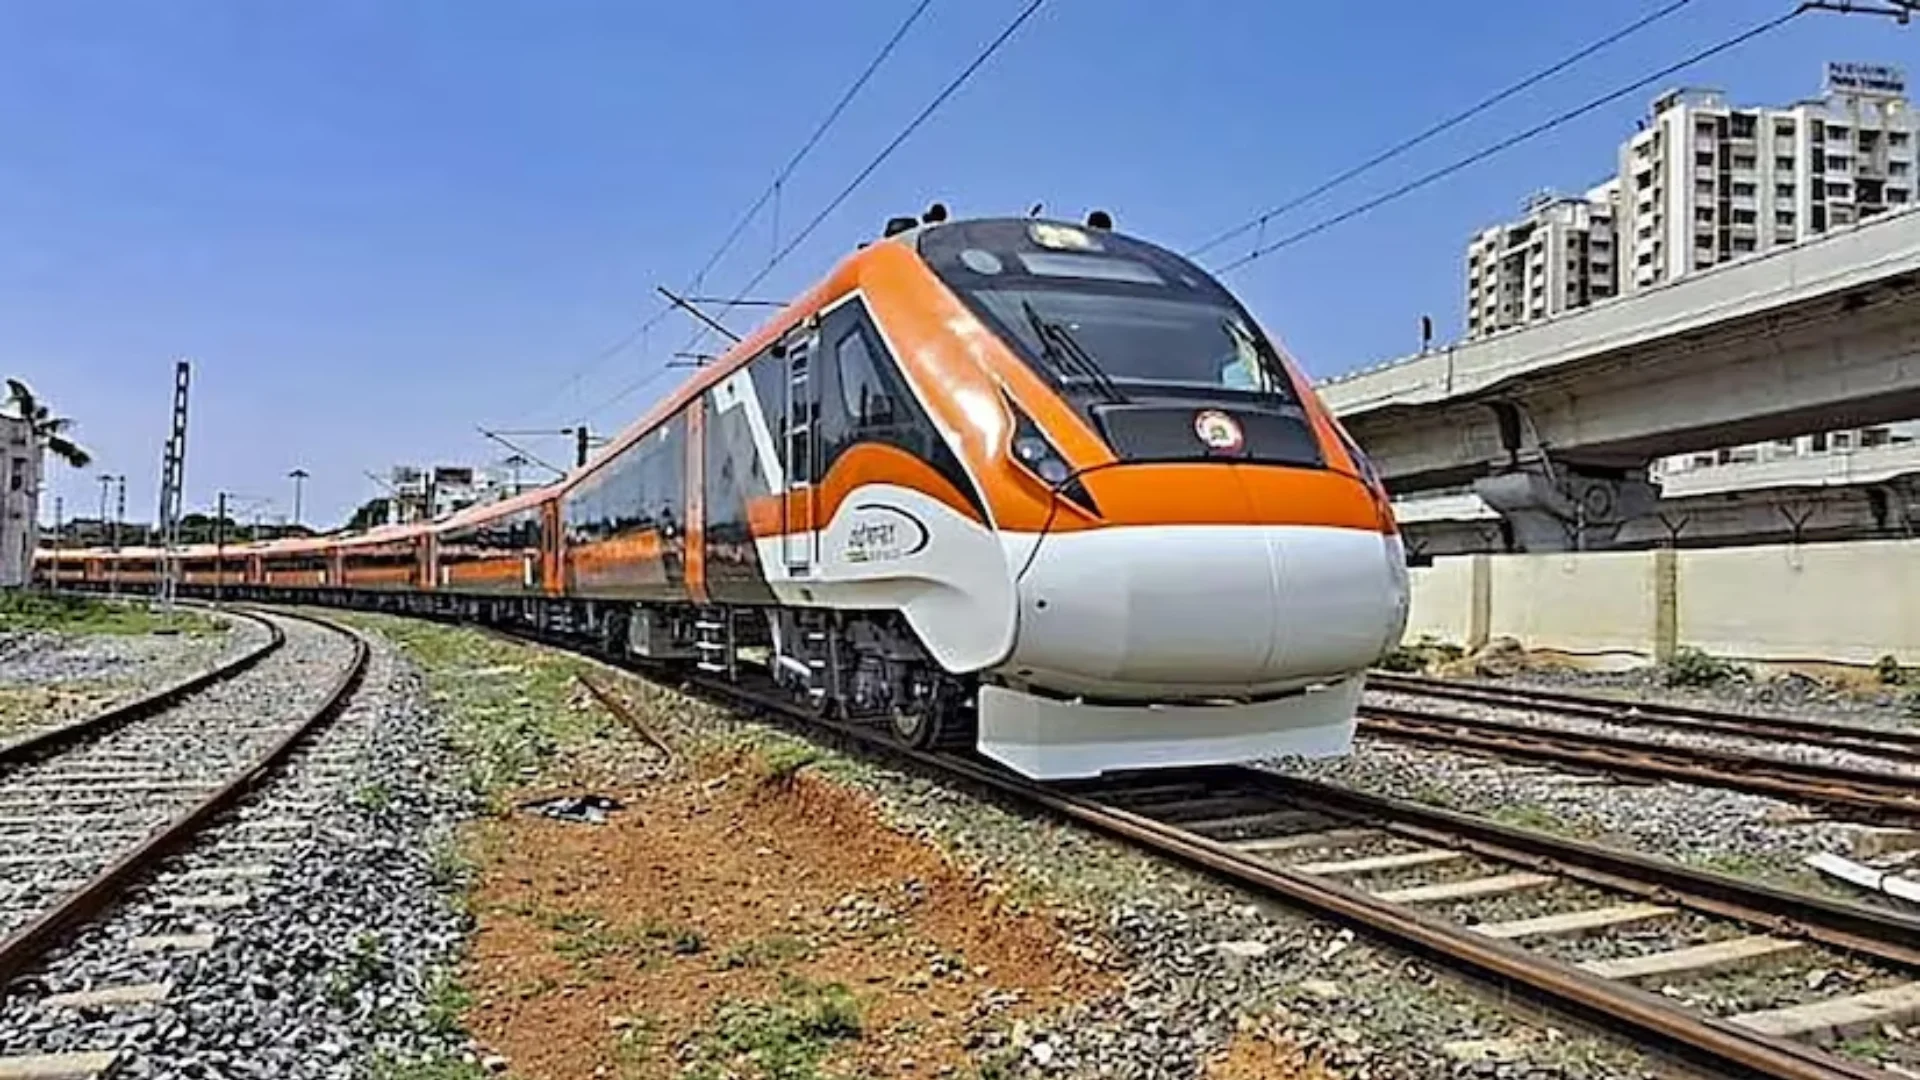 सुपरफास्ट तरीके से होंगे श्रीरामलला के दर्शन, दिल्ली से अयोध्या के बीच चलेगी डायरेक्ट वंदे भारत ट्रेन